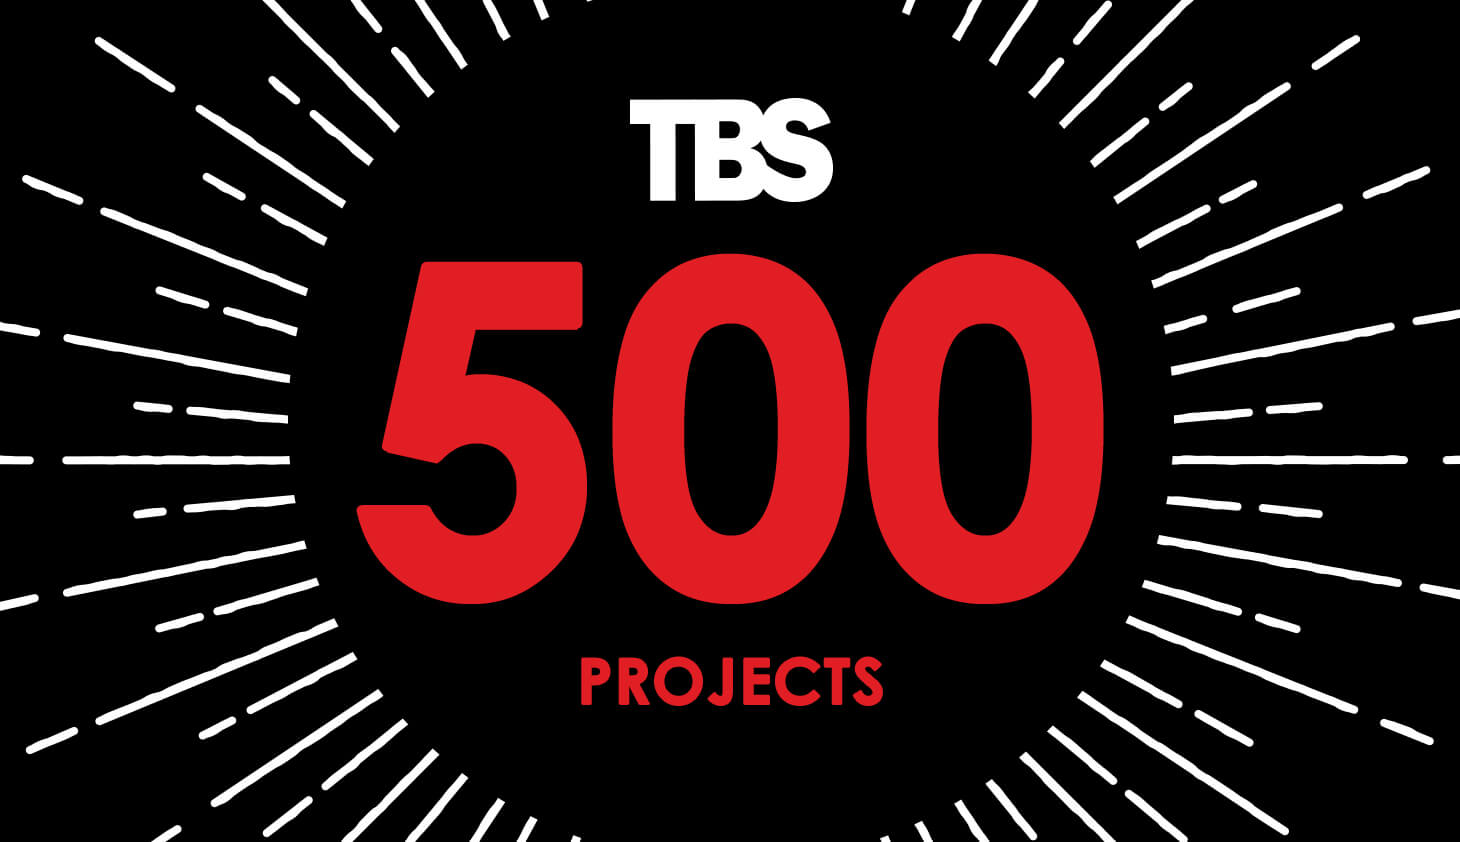 TBS 500 Jobs